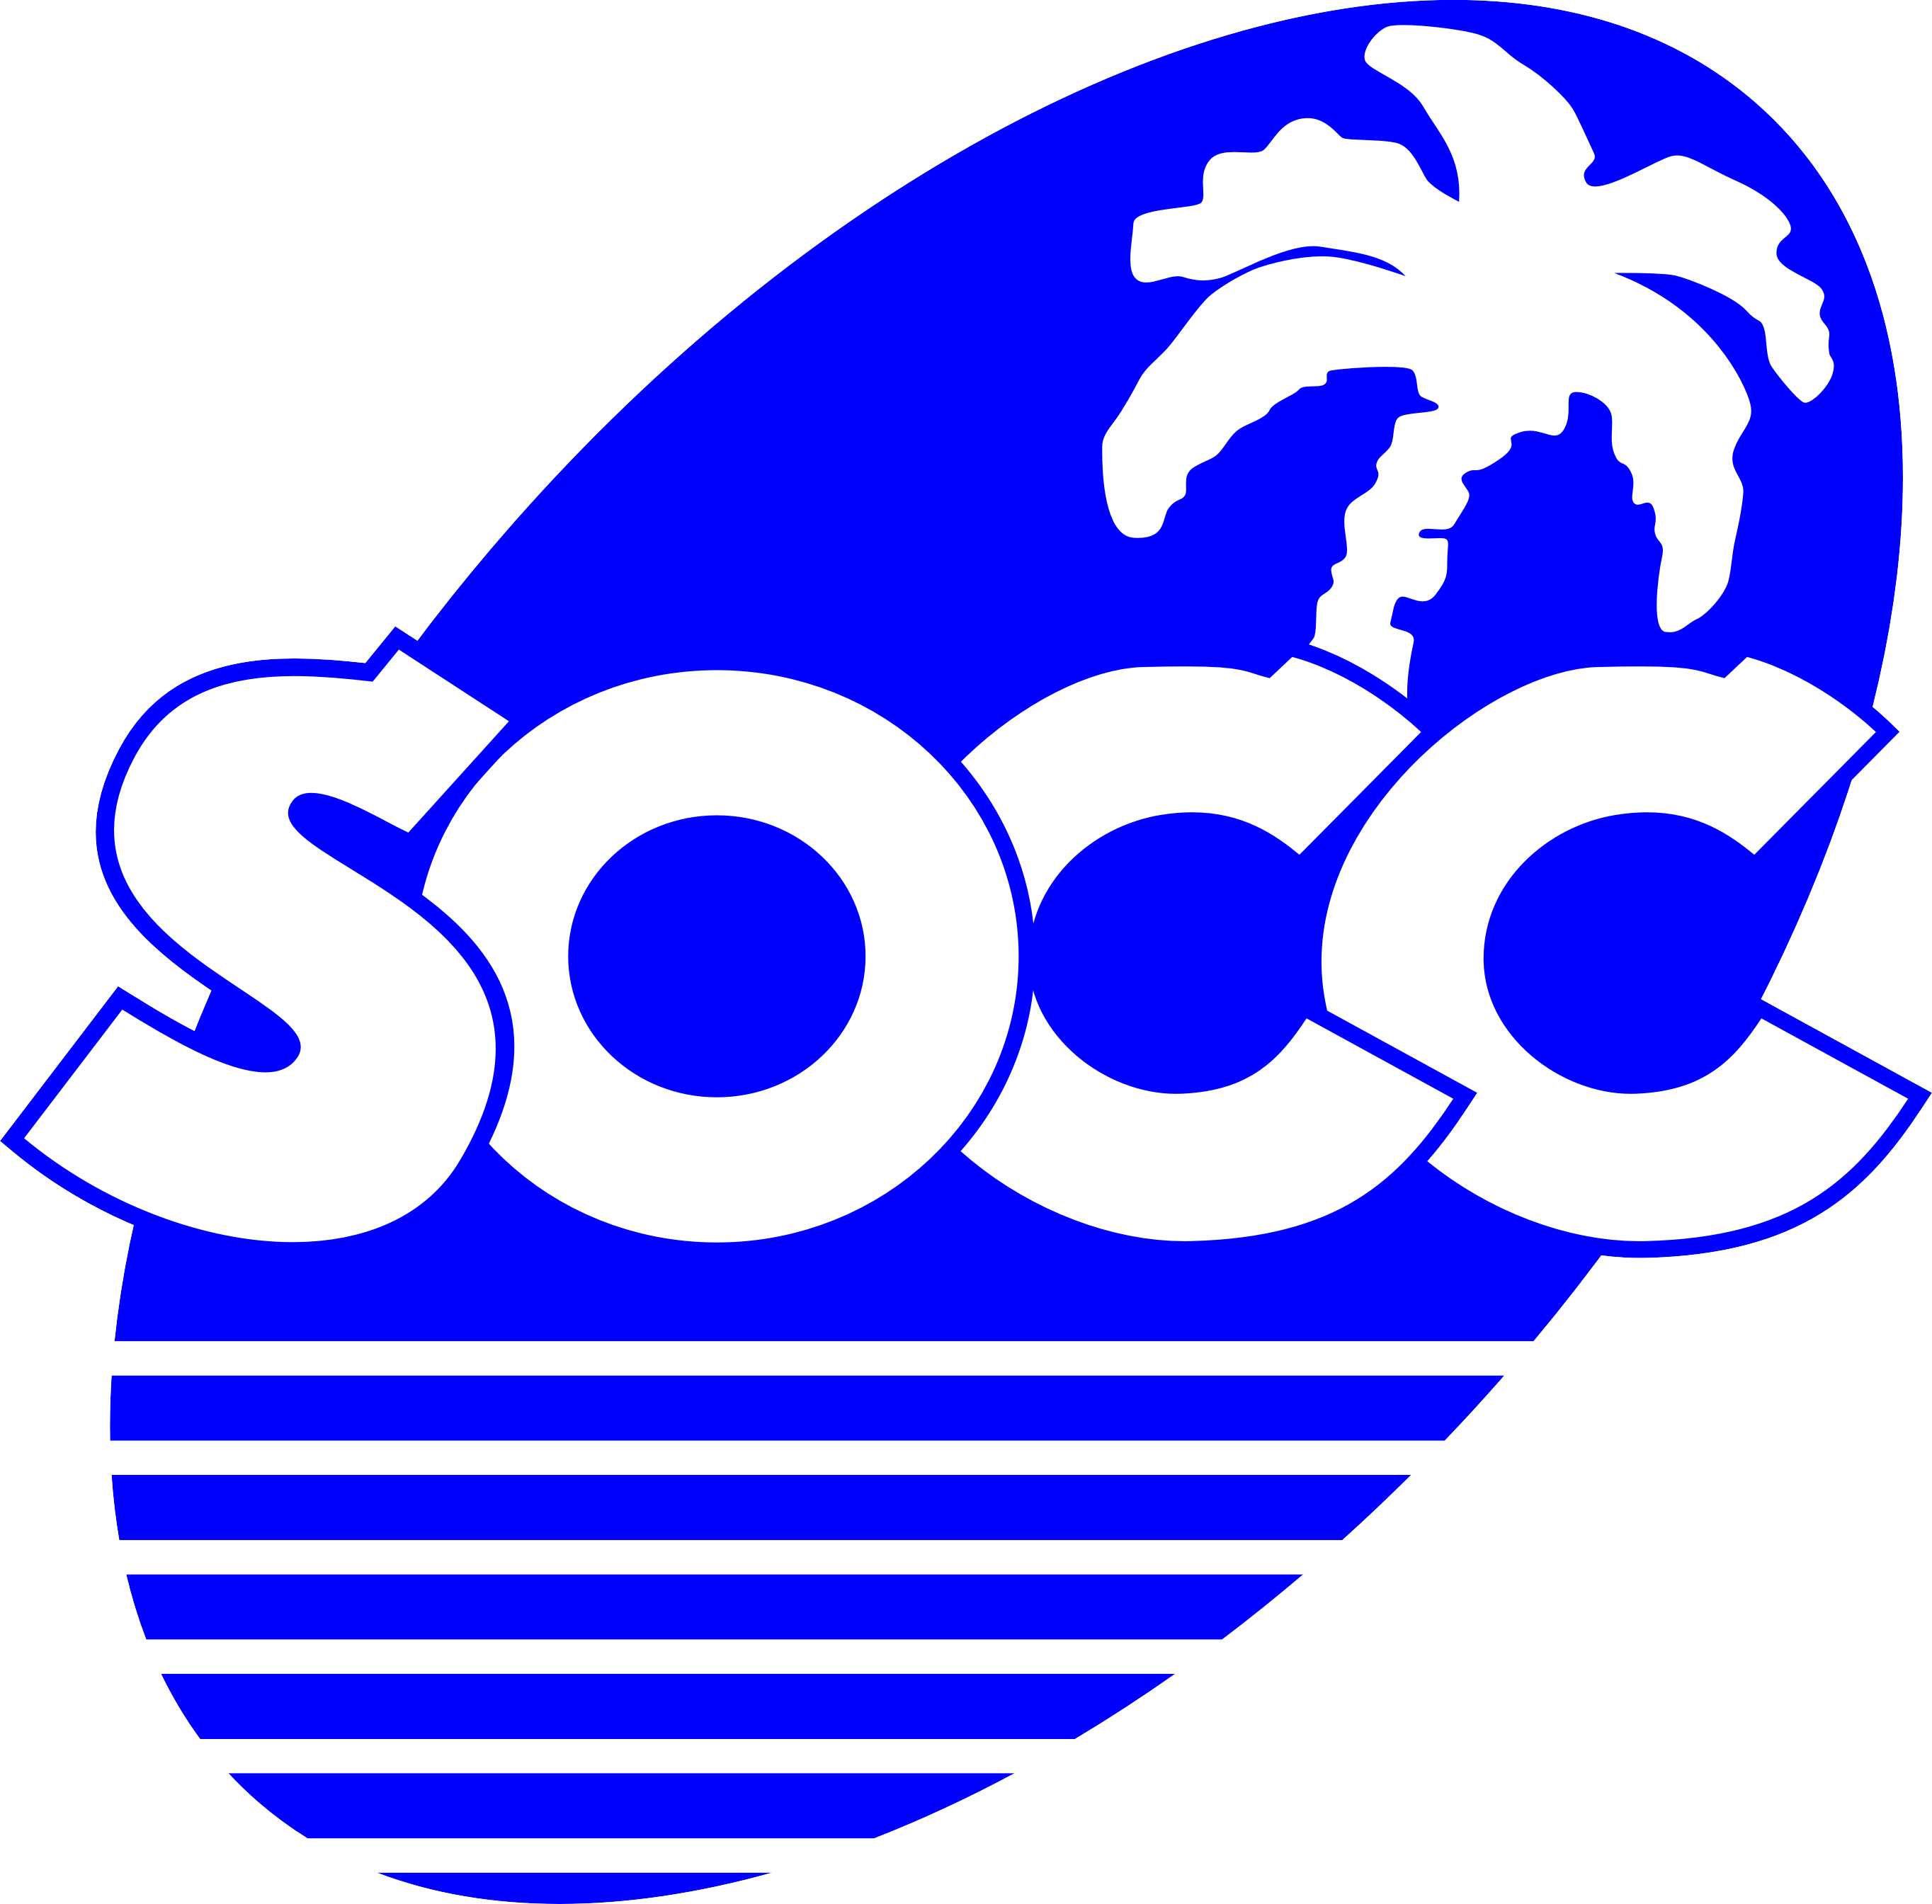 socc